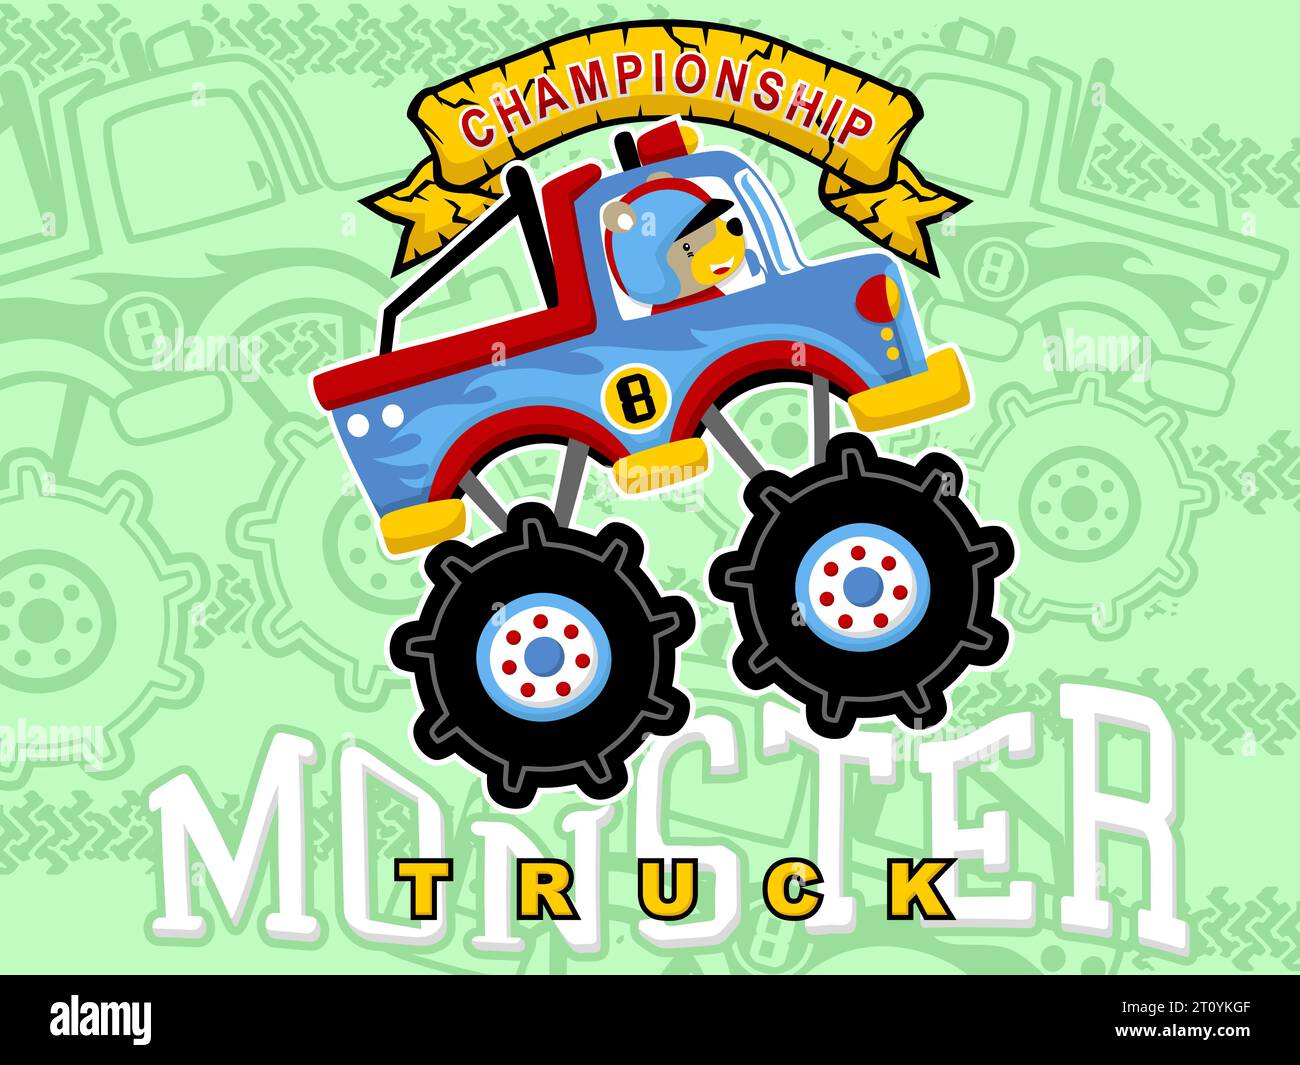 Cartoonvektor des Monster Trucks mit lustigen Bären Fahrer auf Reifenspur und Monster Truck Hintergrund Stock Vektor